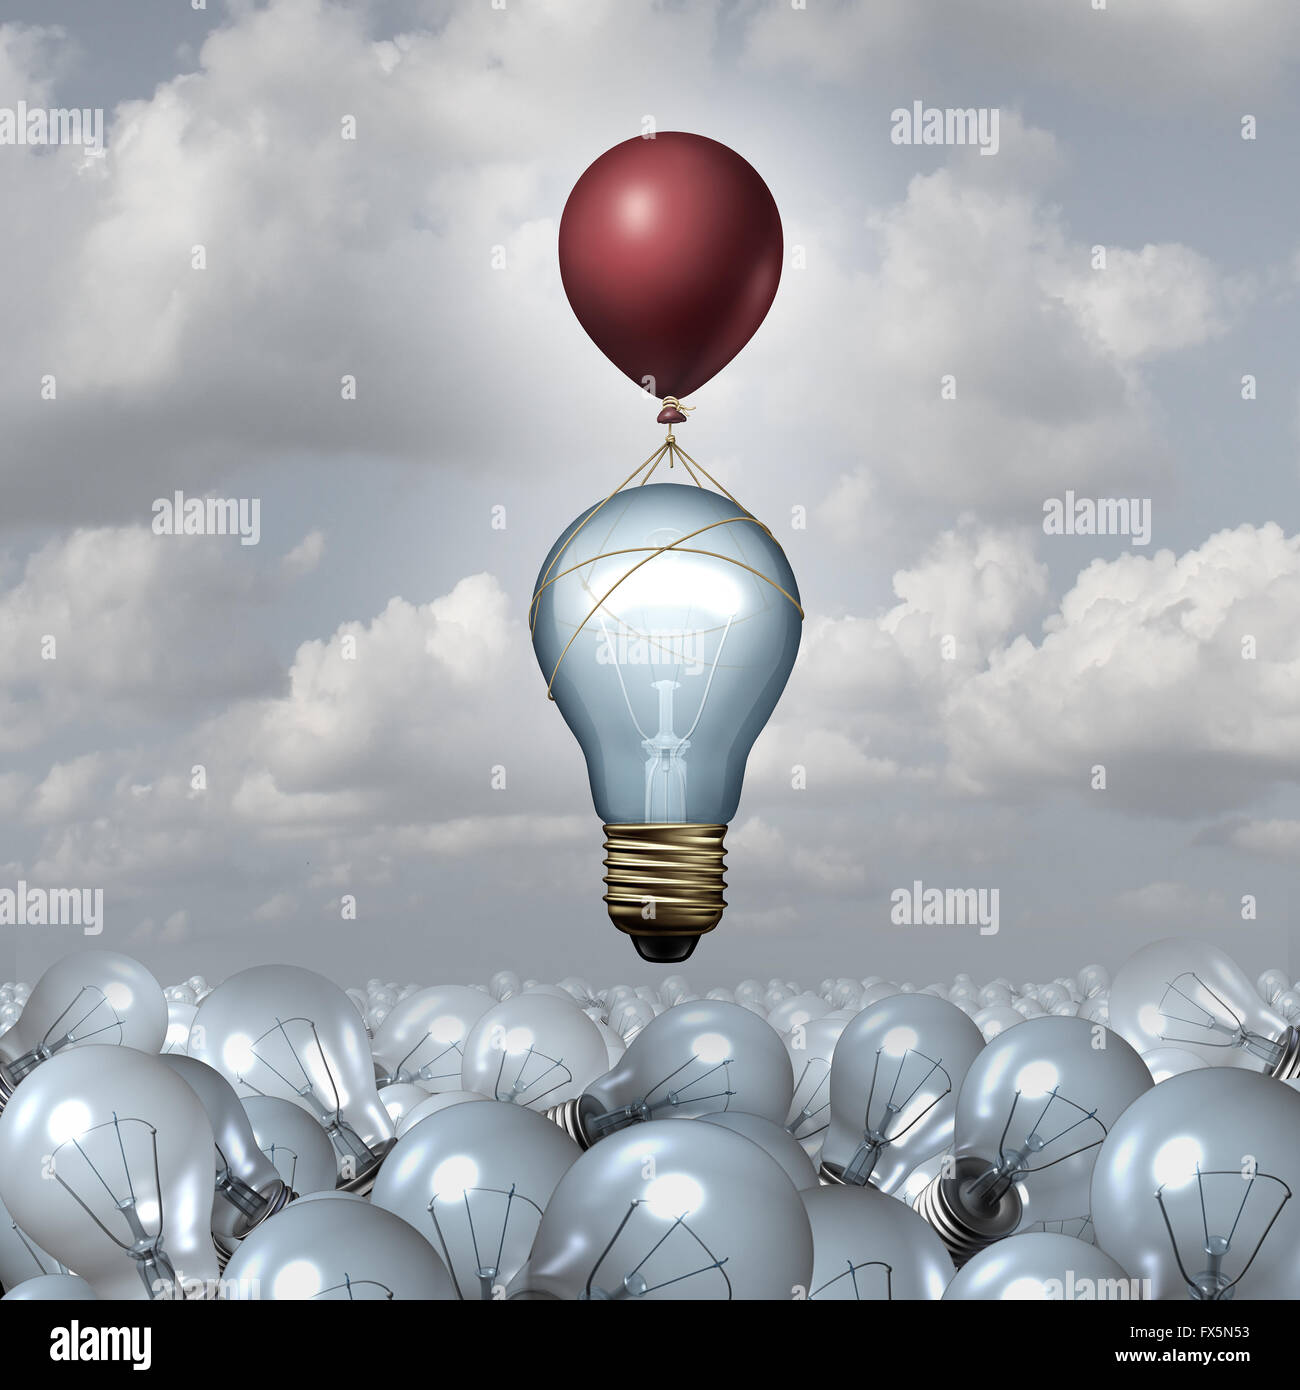 Innovatives Denken-Konzept als eine Gruppe von 3D-Illustration Glühbirnen in einer weiten Landschaft als eine Glühbirne erhebt sich mit Hilfe eines Ballons als Motivation Metapher für kreative Innovation Inspiration. Stockfoto